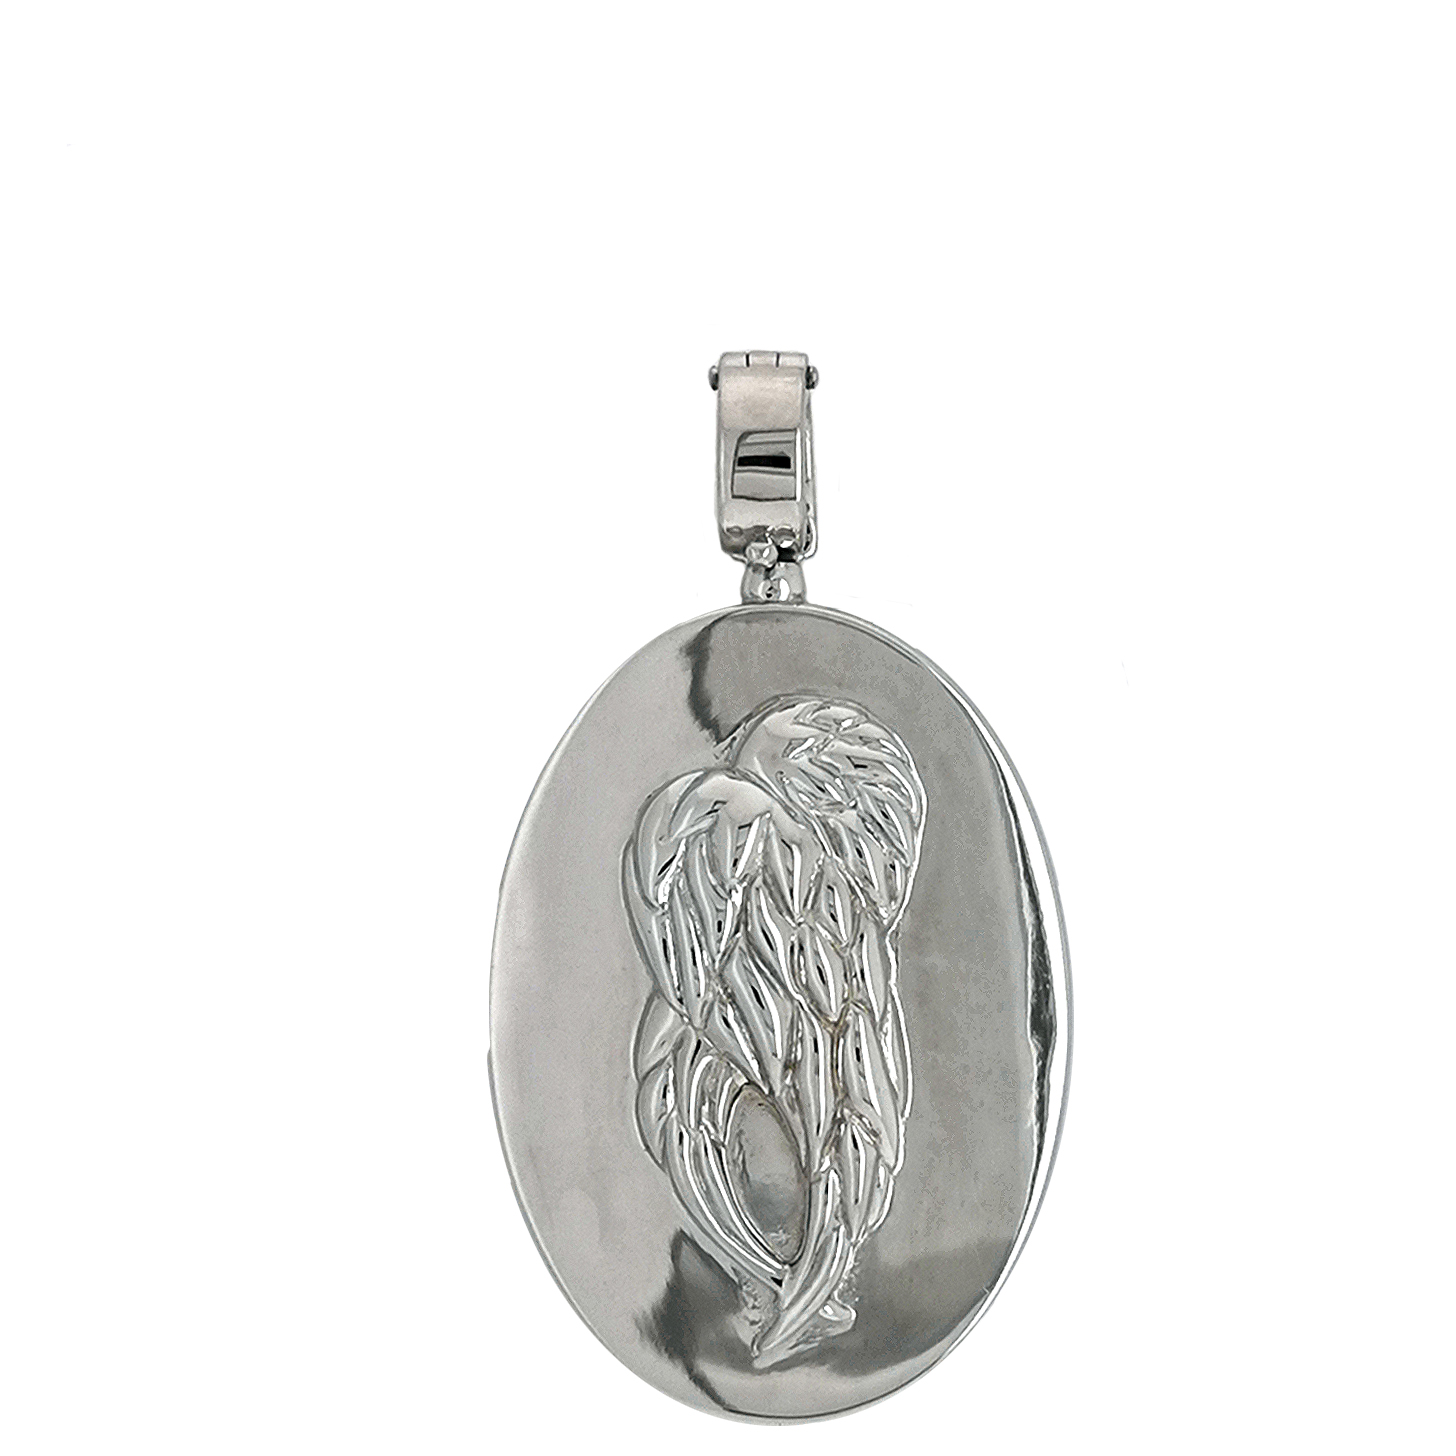 Engel der Unendlichkeit / Angel of Eternity - Edelsteingemälde - Anhänger in 925 Sterling Silber, rhod.